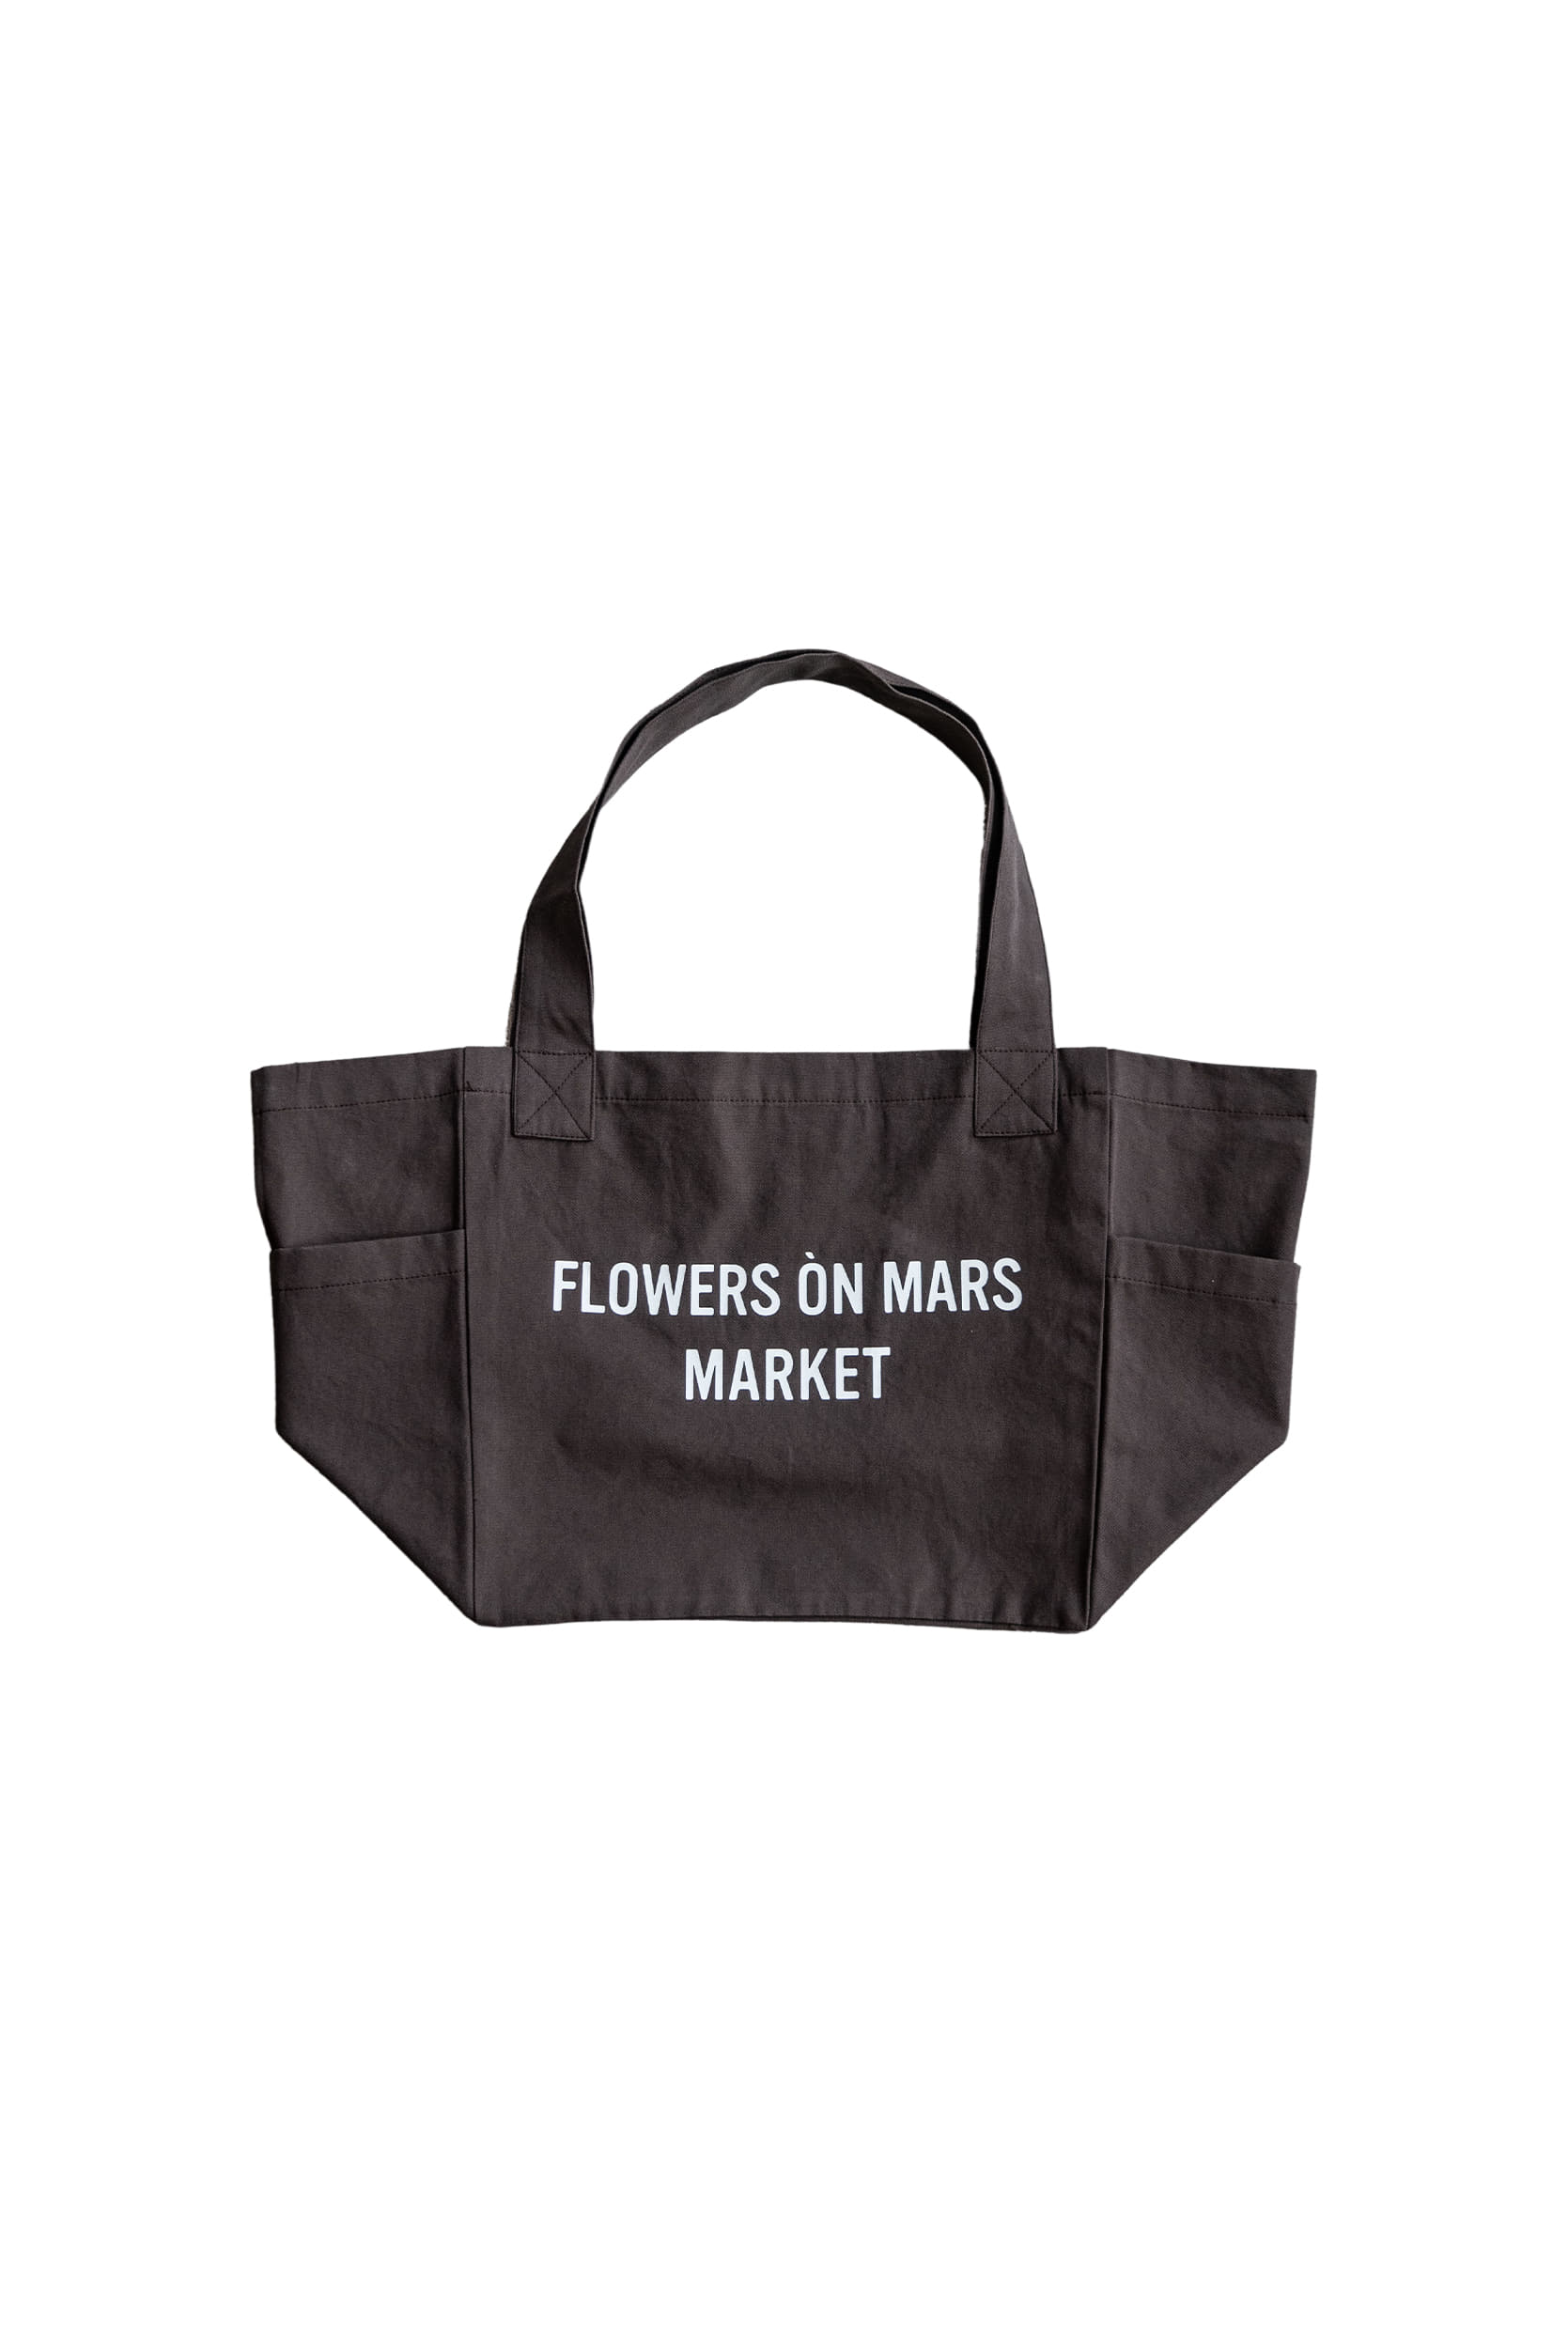 FÒM shopper bag [brown]